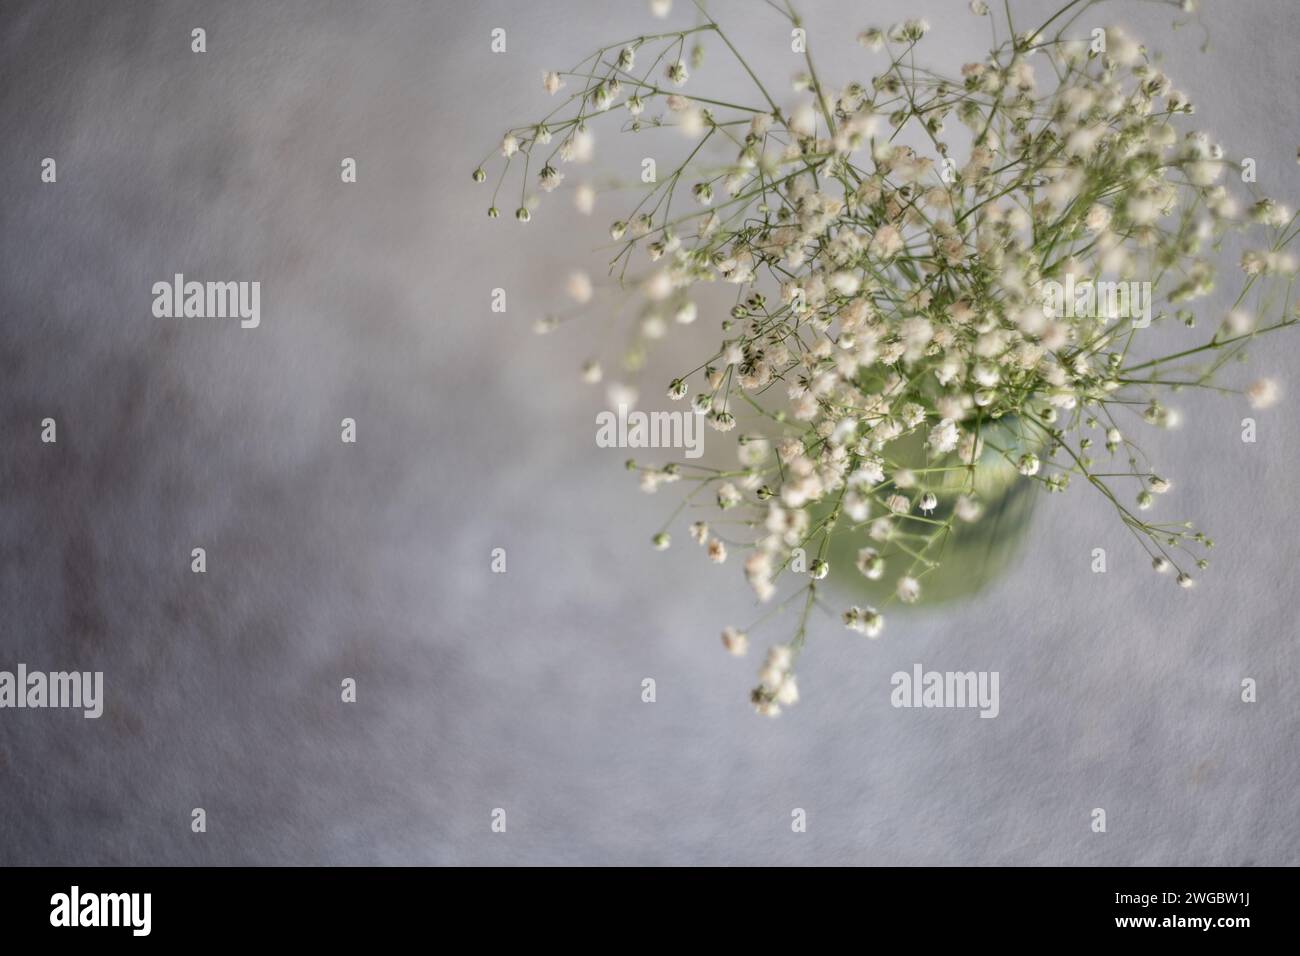 Vue aérienne d'un bouquet de fleurs blanches de Gypsophila dans un vase en verre vert sur une table Banque D'Images